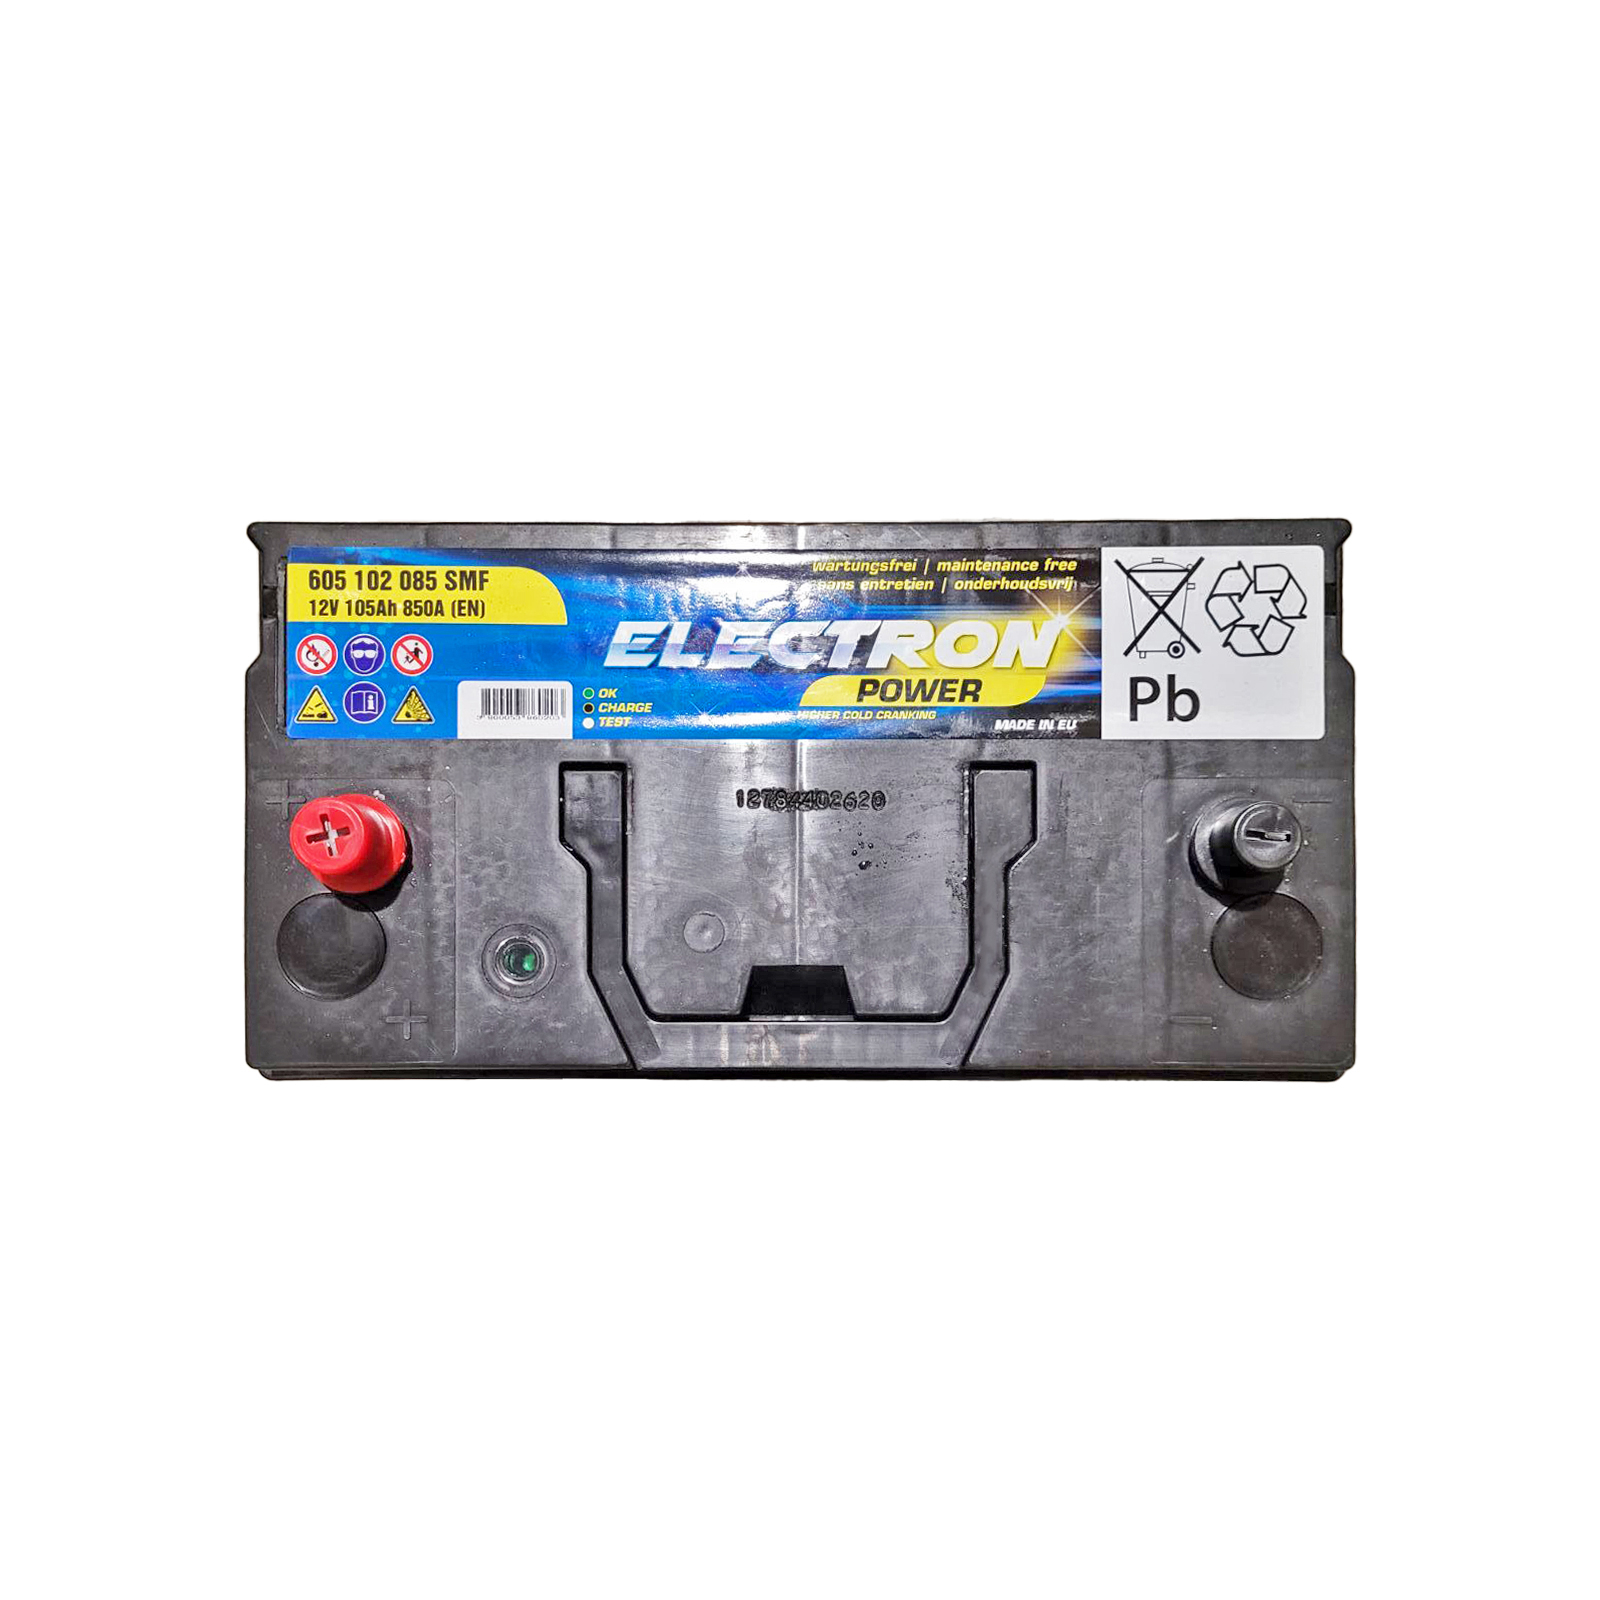 Аккумулятор автомобильный ELECTRON TRUCK HD SMF 105Ah клеми по центру (850EN) (605 102 085 SMF) изображение 2